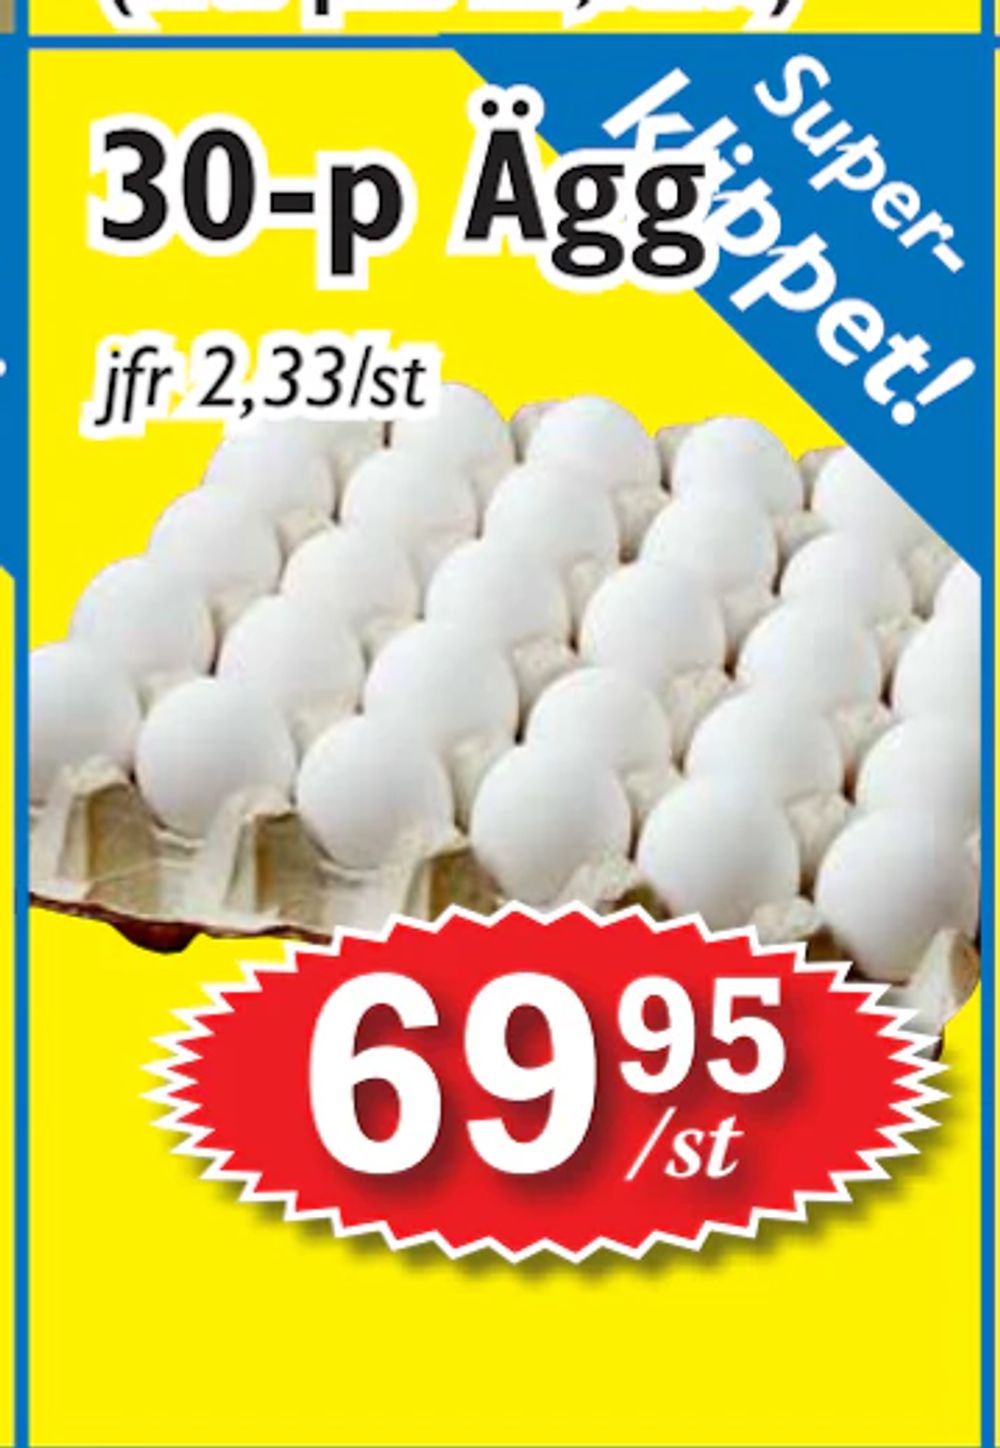 Erbjudanden på 30-p Ägg från T-jarlen för 69,95 kr